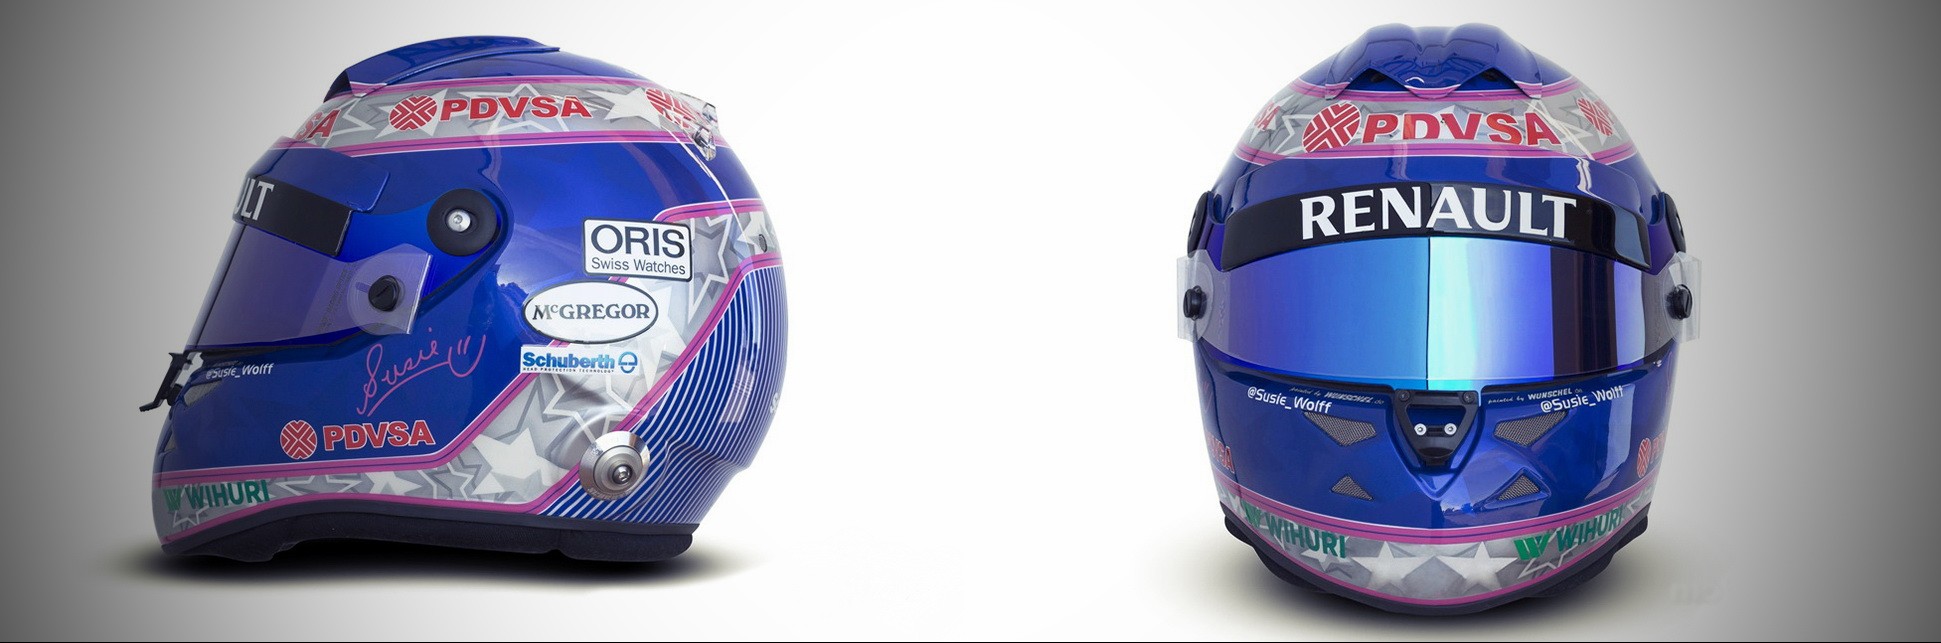 Шлем Сюзи Вольфф на сезон 2013 года | 2013 helmet of Susie Wolff